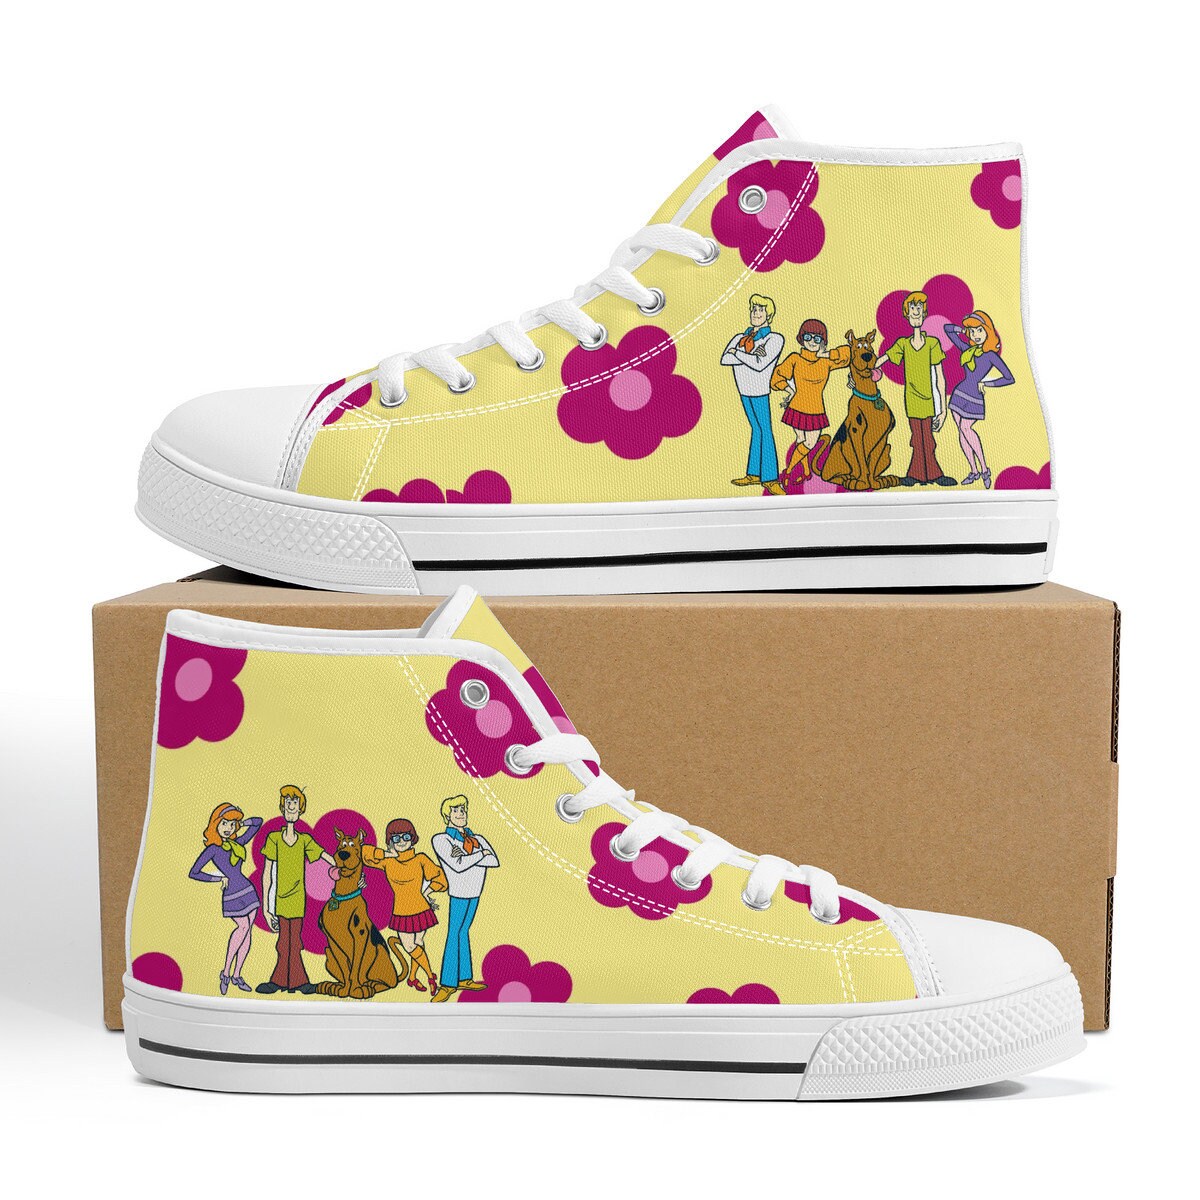 Scooby Doo, Flower Power, Cartoon High Top Sneakers